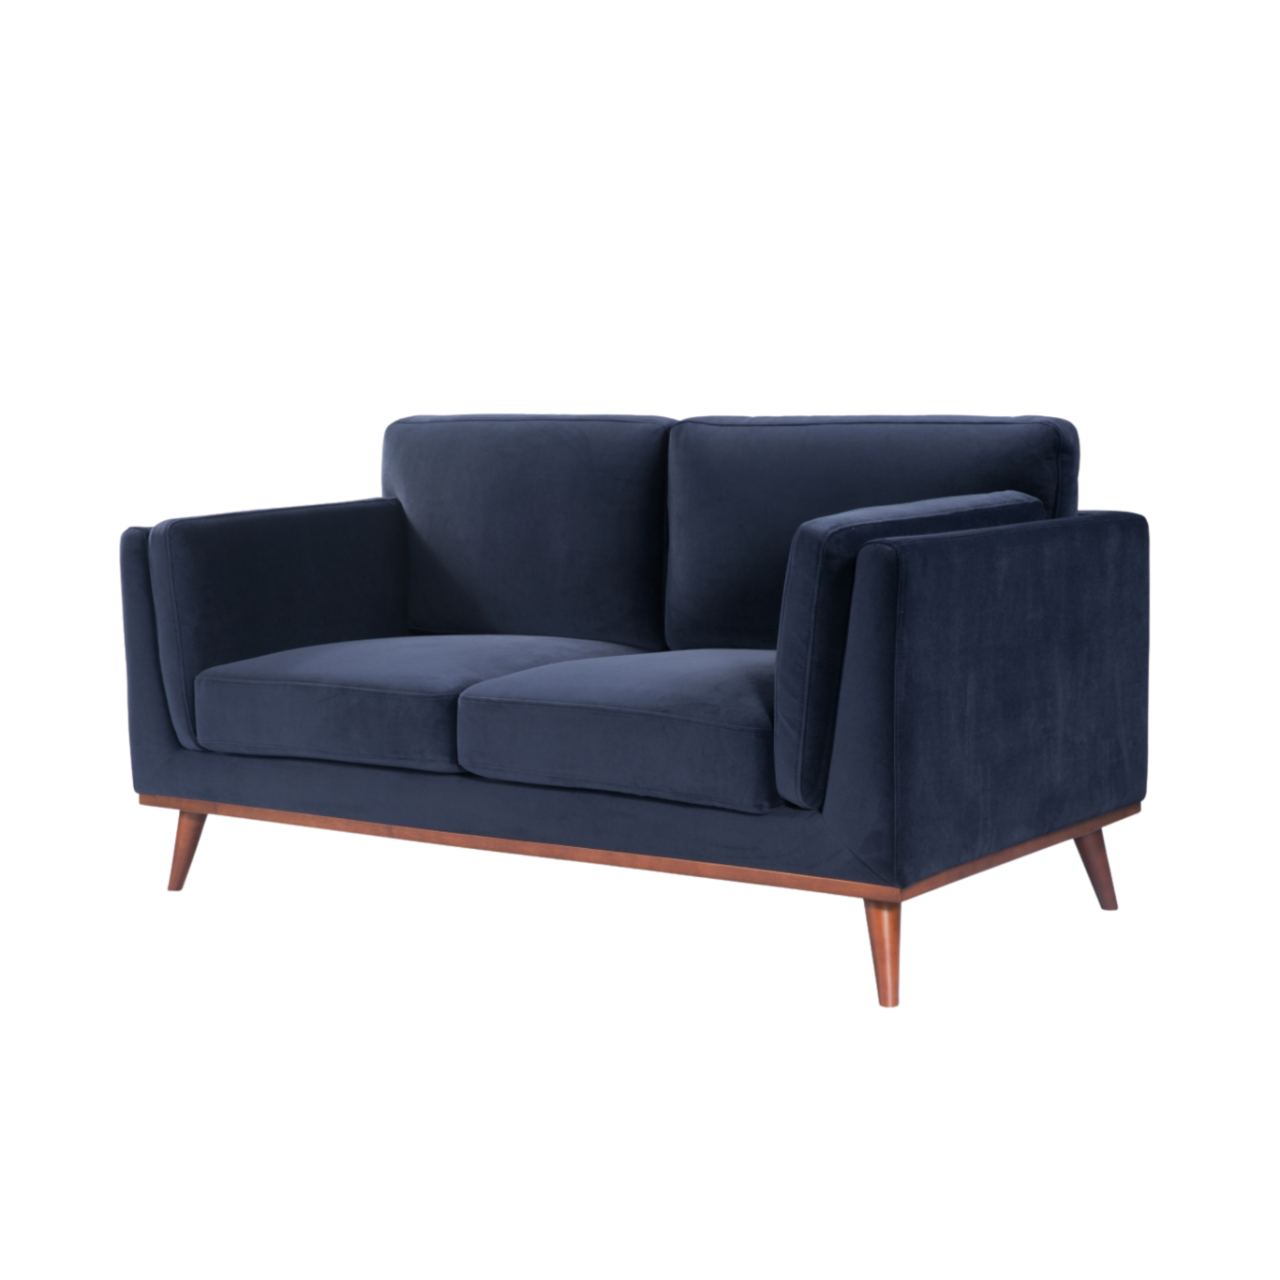 Simple, modern shaped 2 seater sofa in midnight blue velvet upholstery